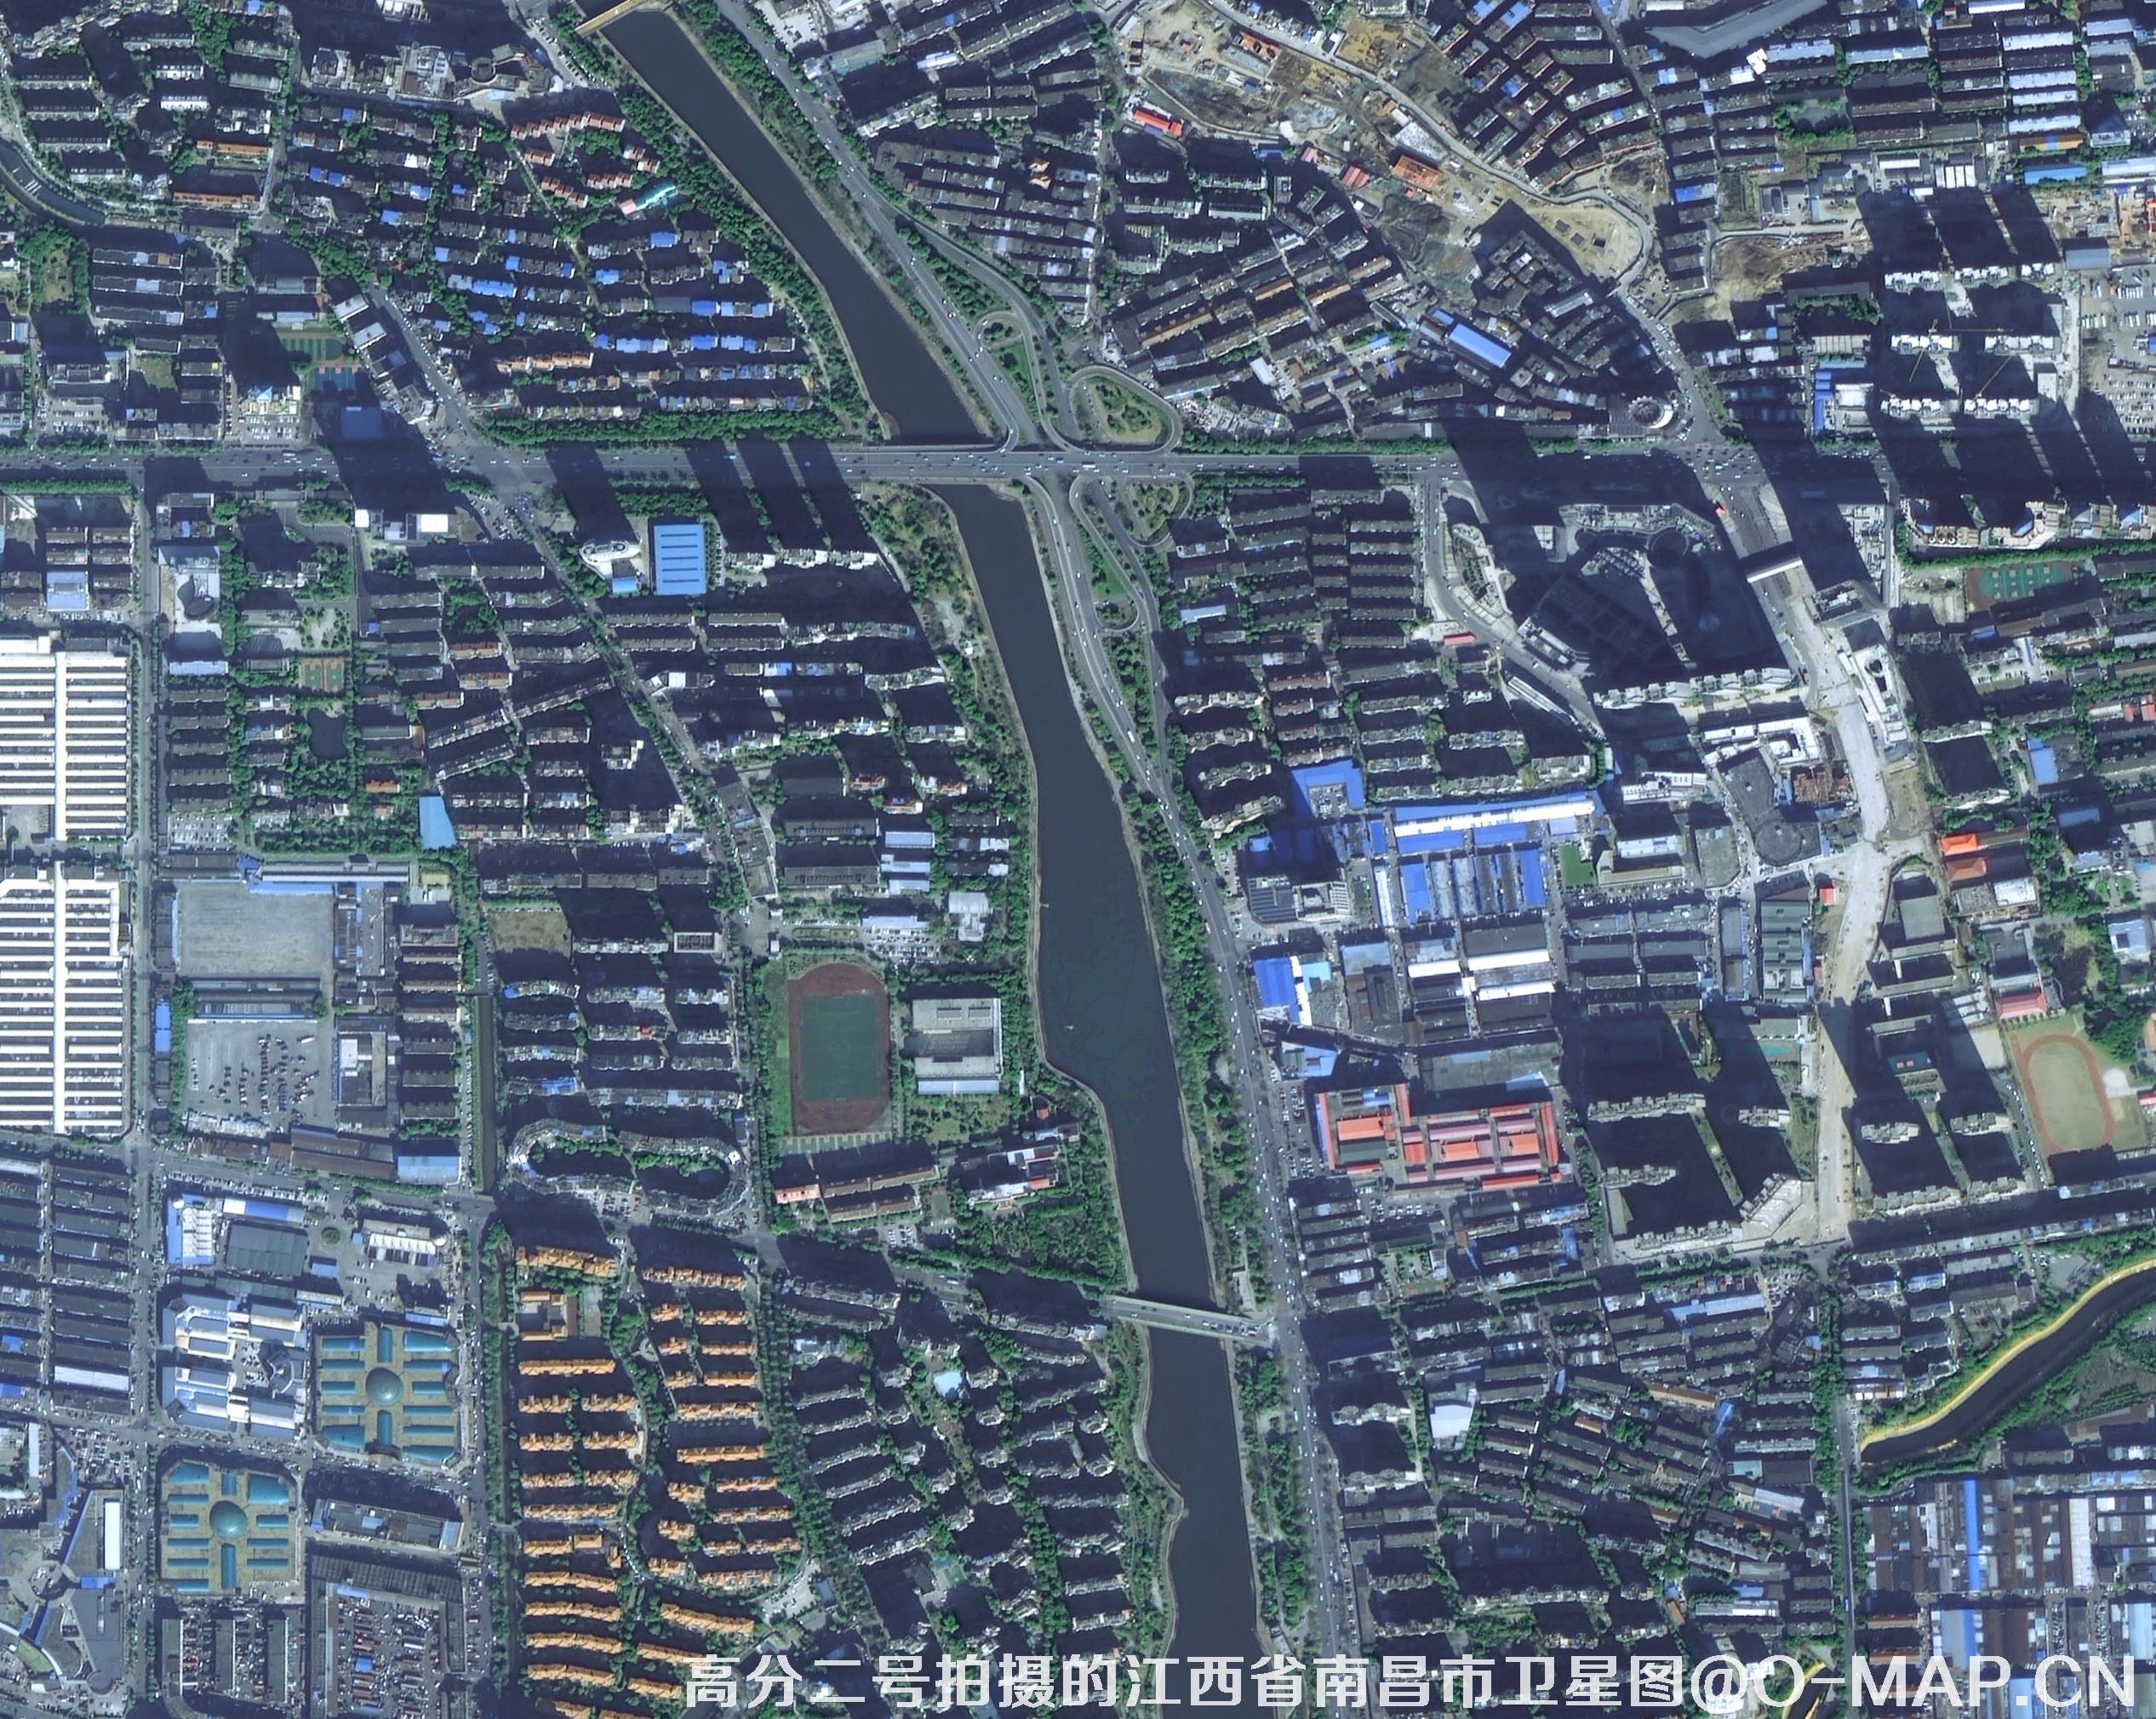 国产0.8米高分二号卫星拍摄的卫星图片